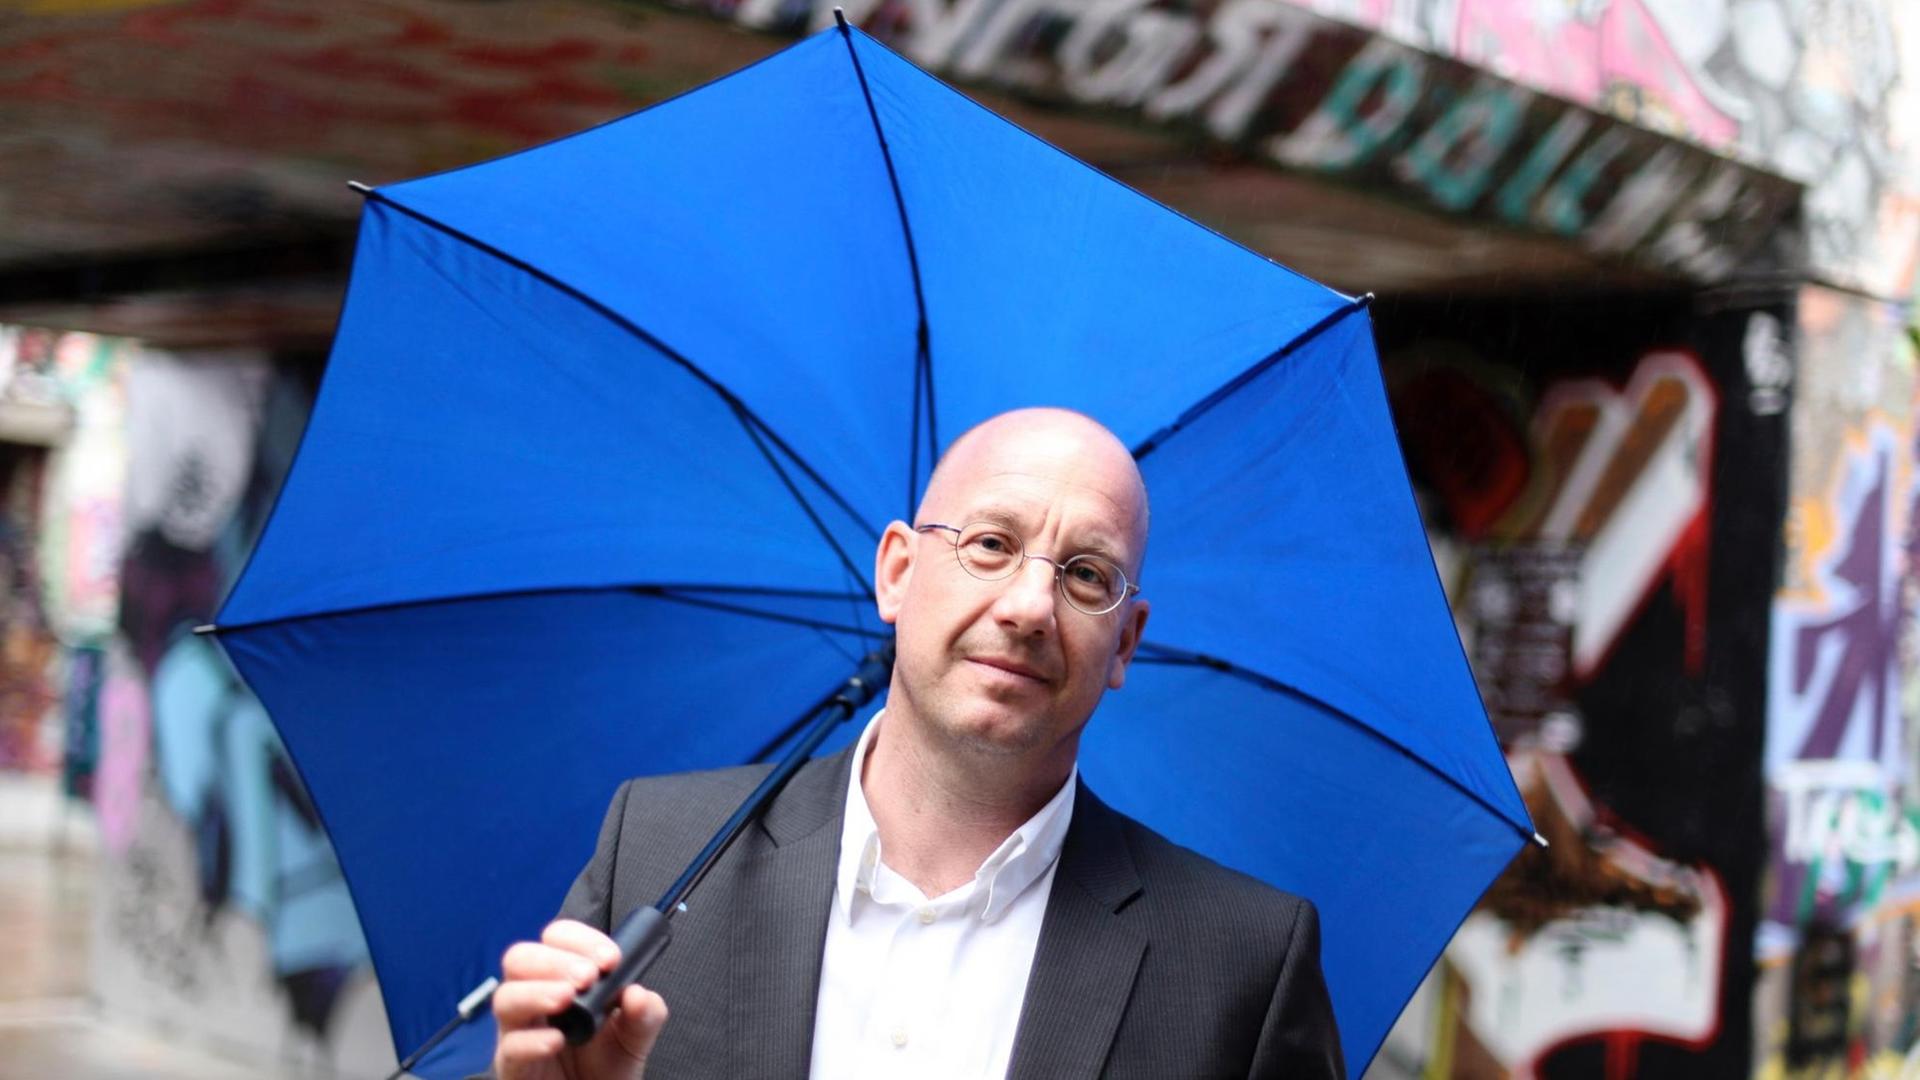 Professor Stefan Selke mit blauem Regenschirm